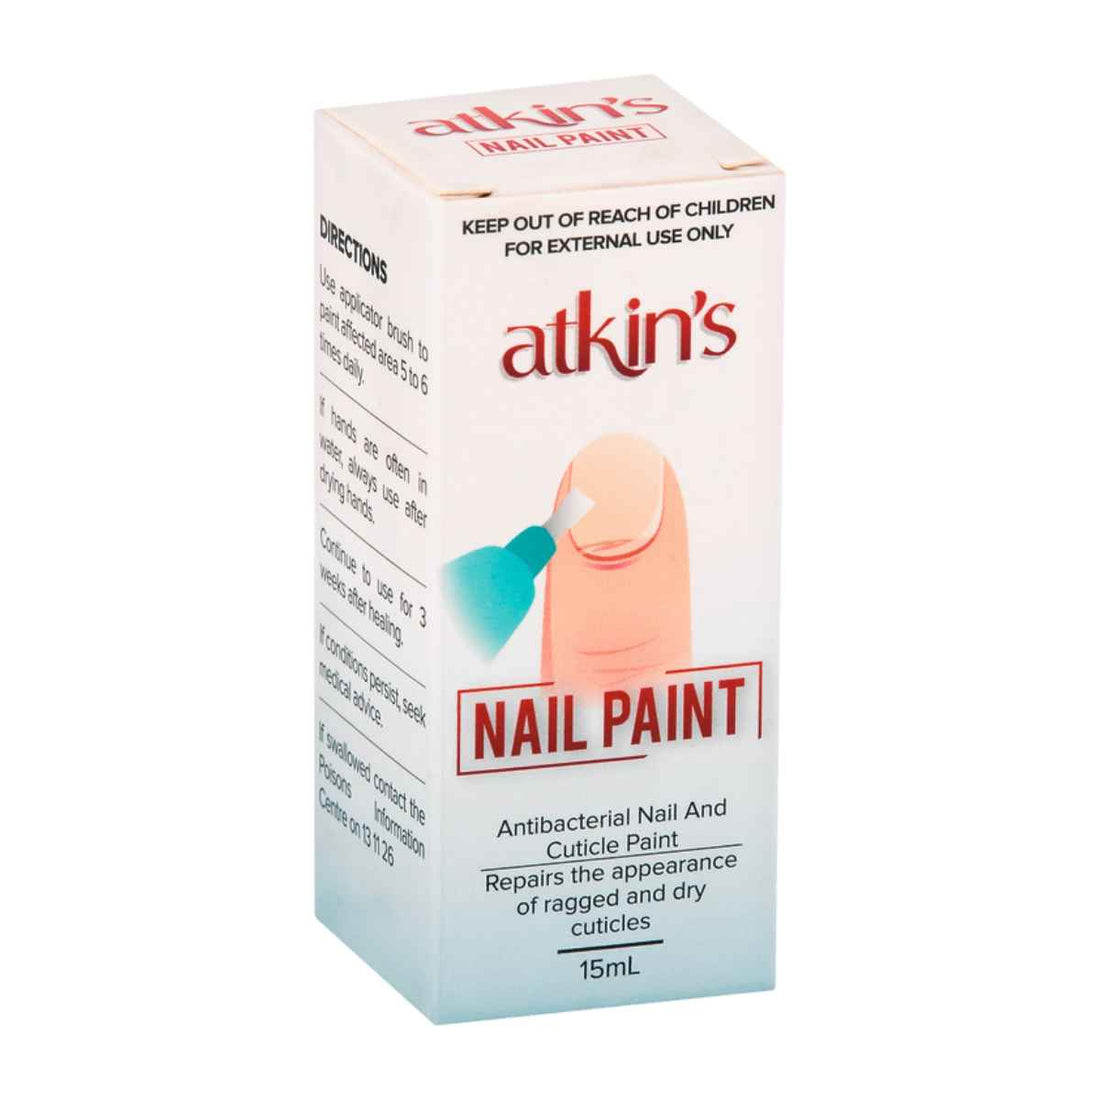 Atkins Nail Paint For Nail And Cuticle Health